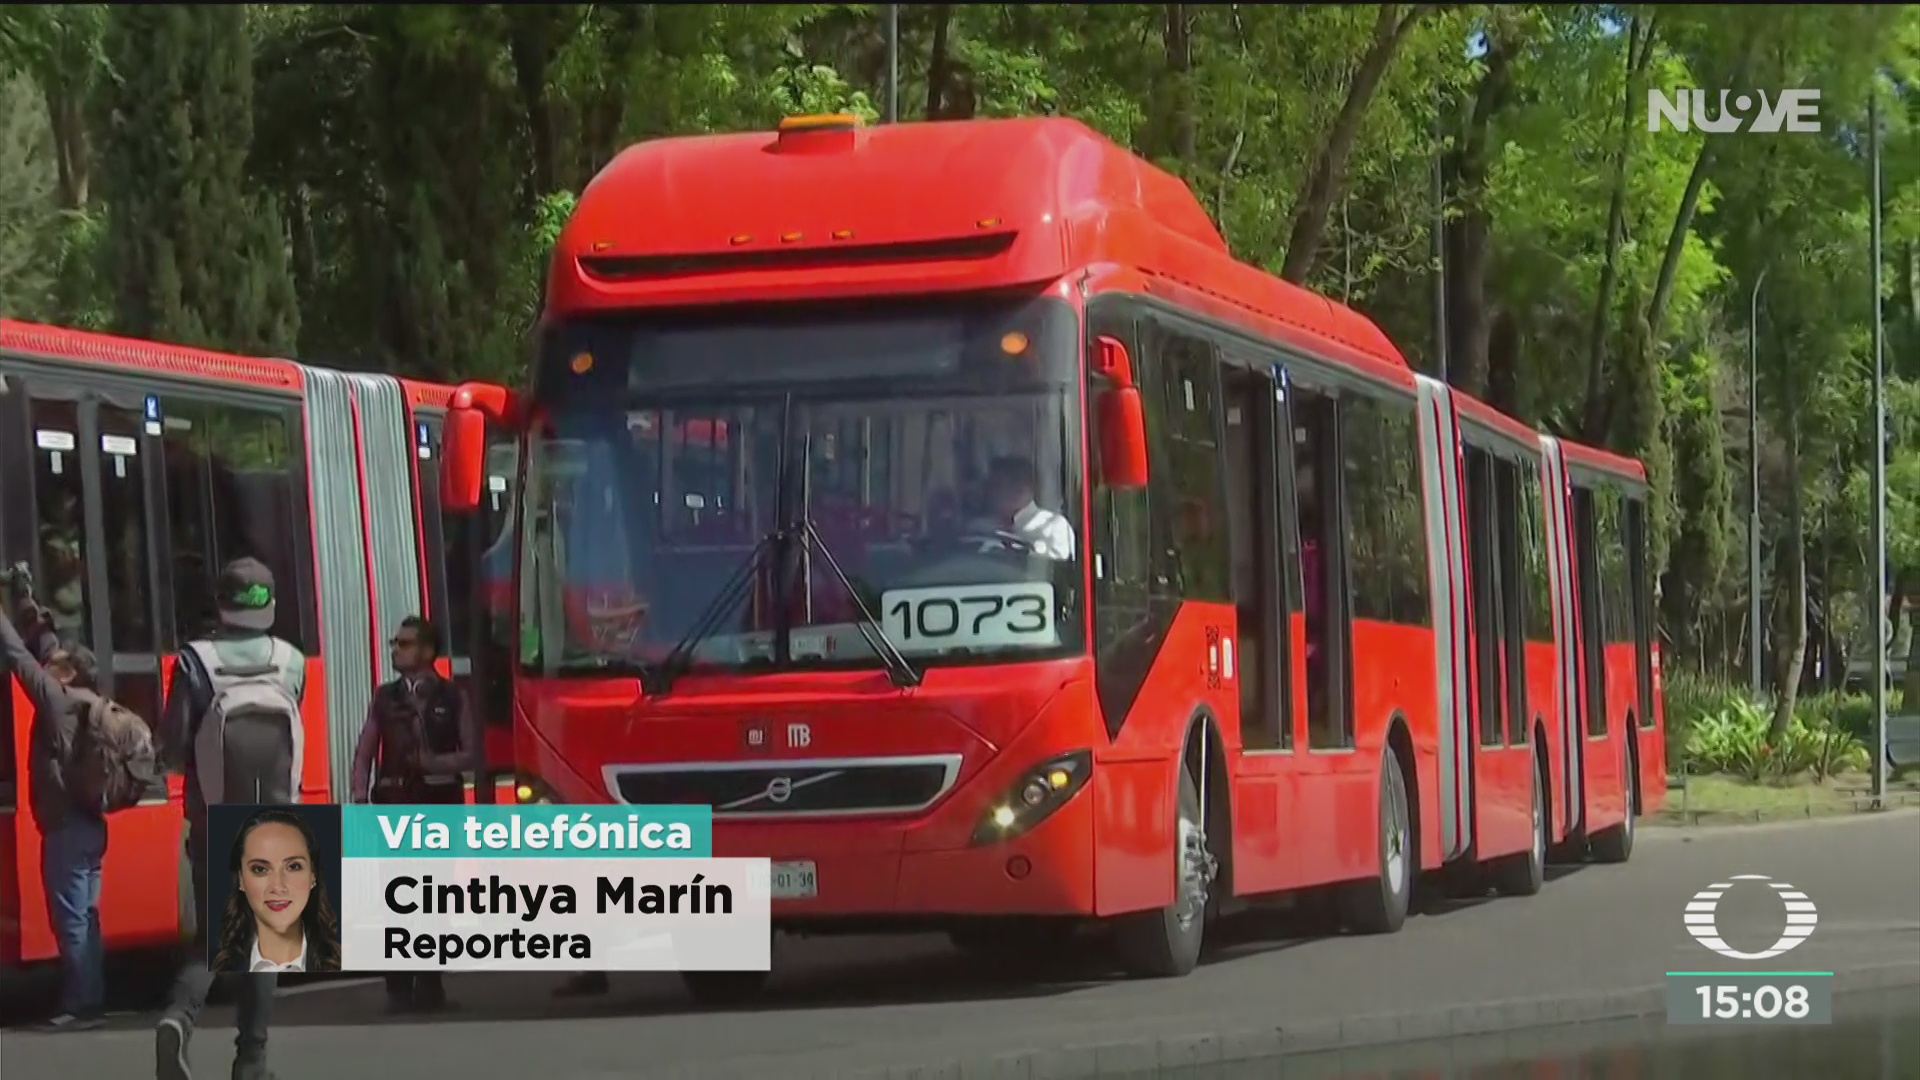 FOTO: estrenan nuevas unidades del metrobus en la cdmx